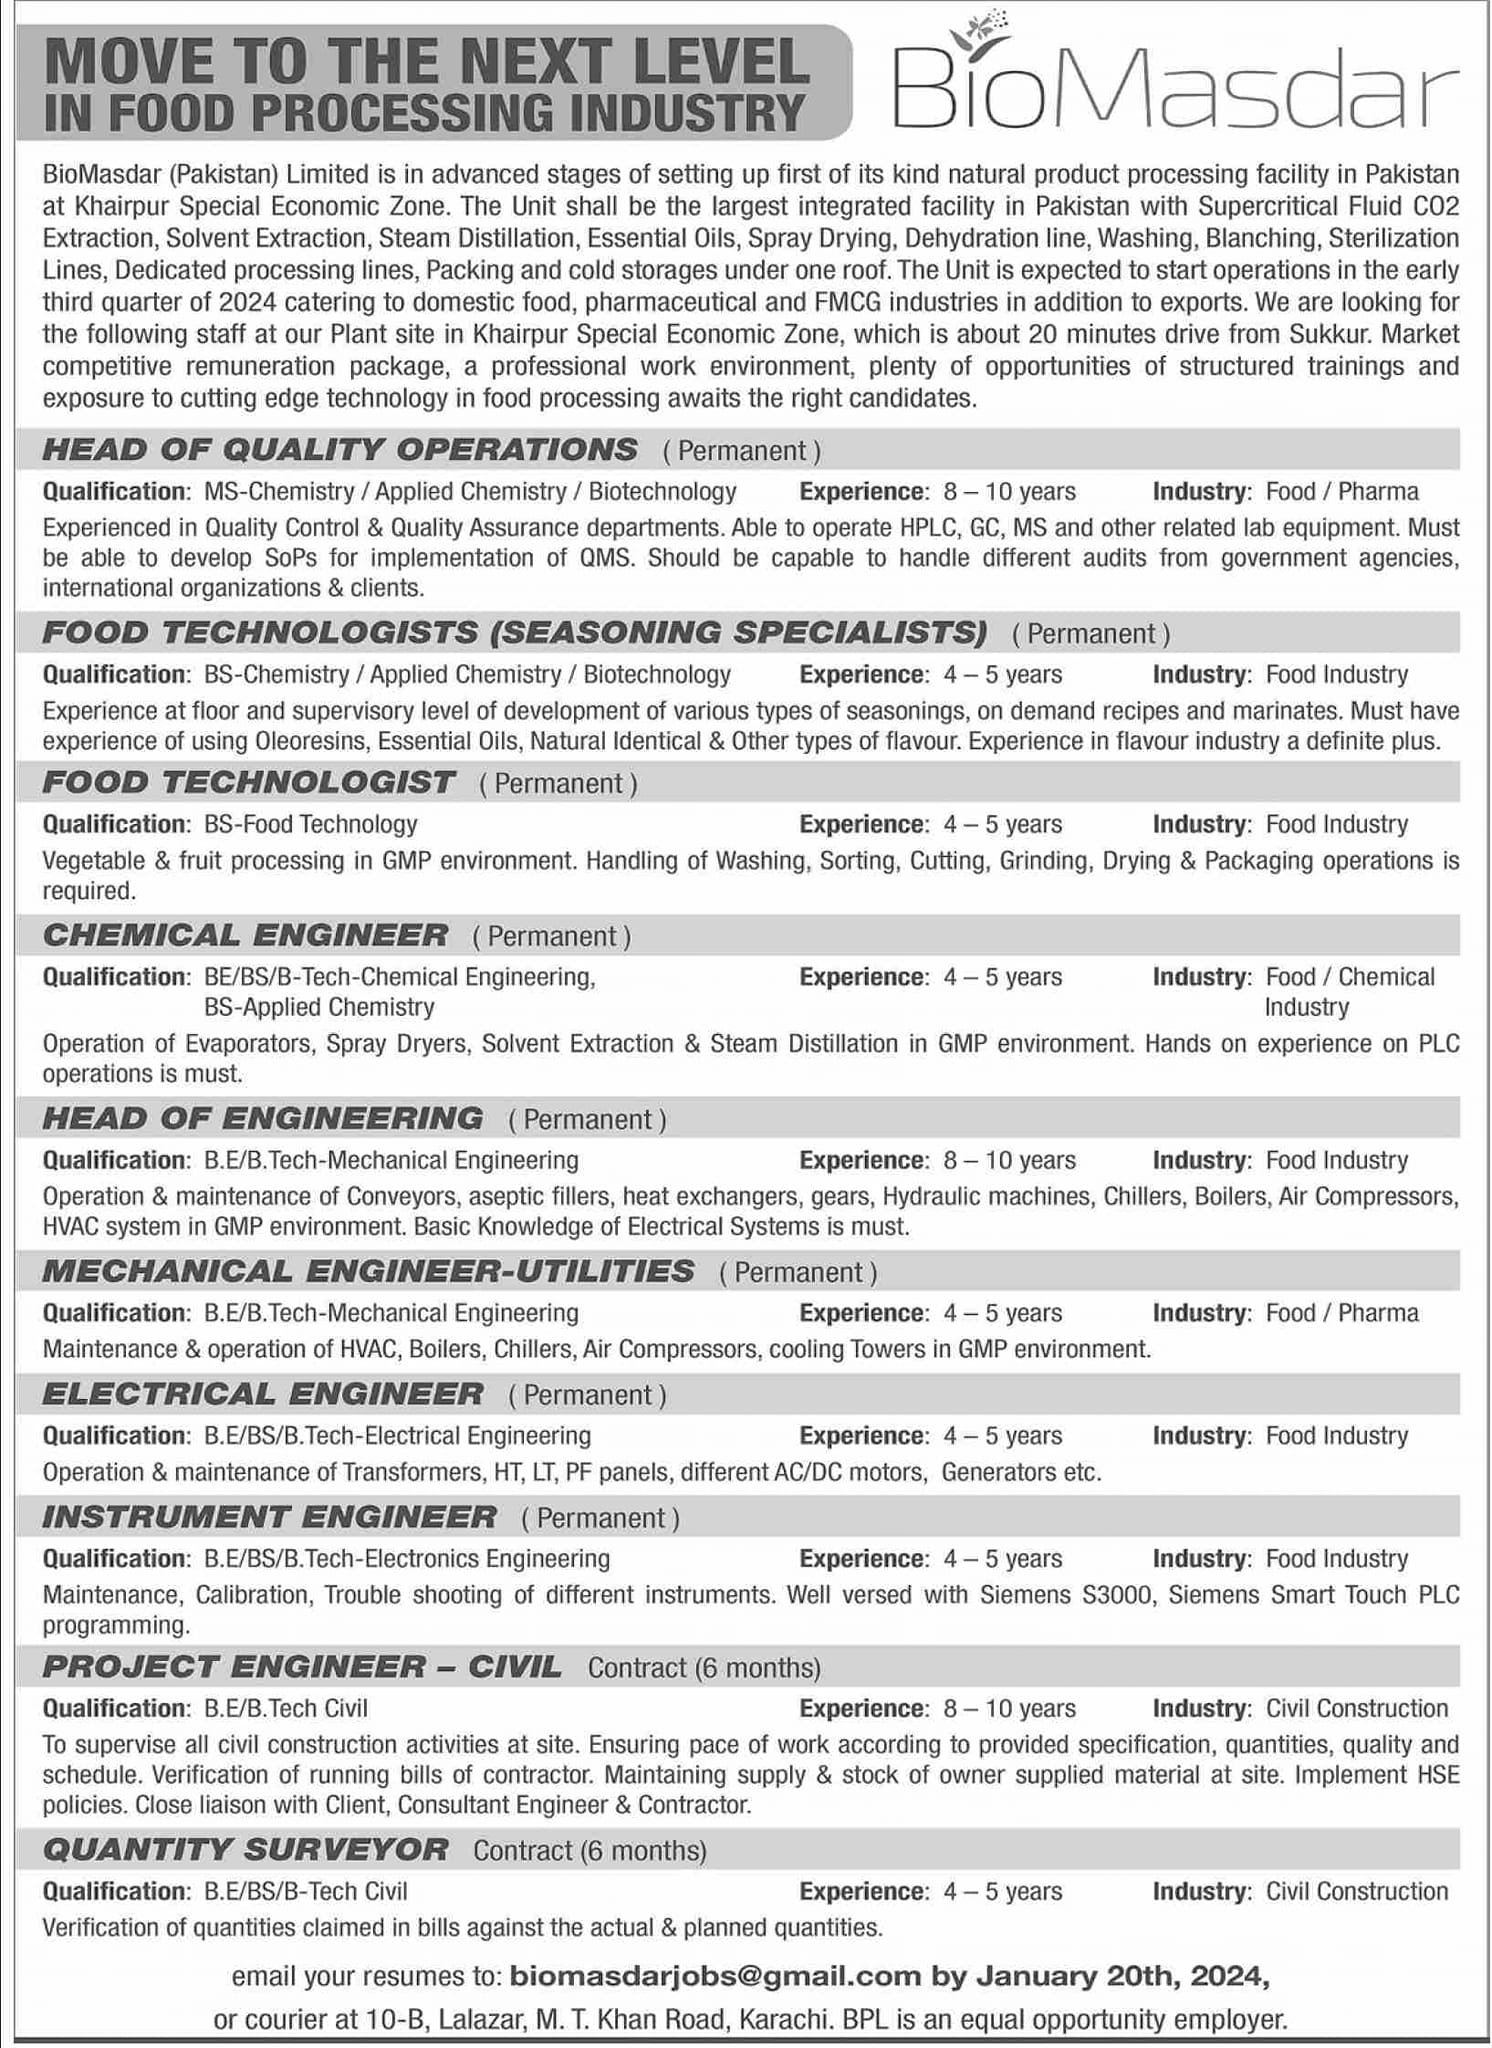 BioMasdar Pakistan Limited Karachi Jobs 2024